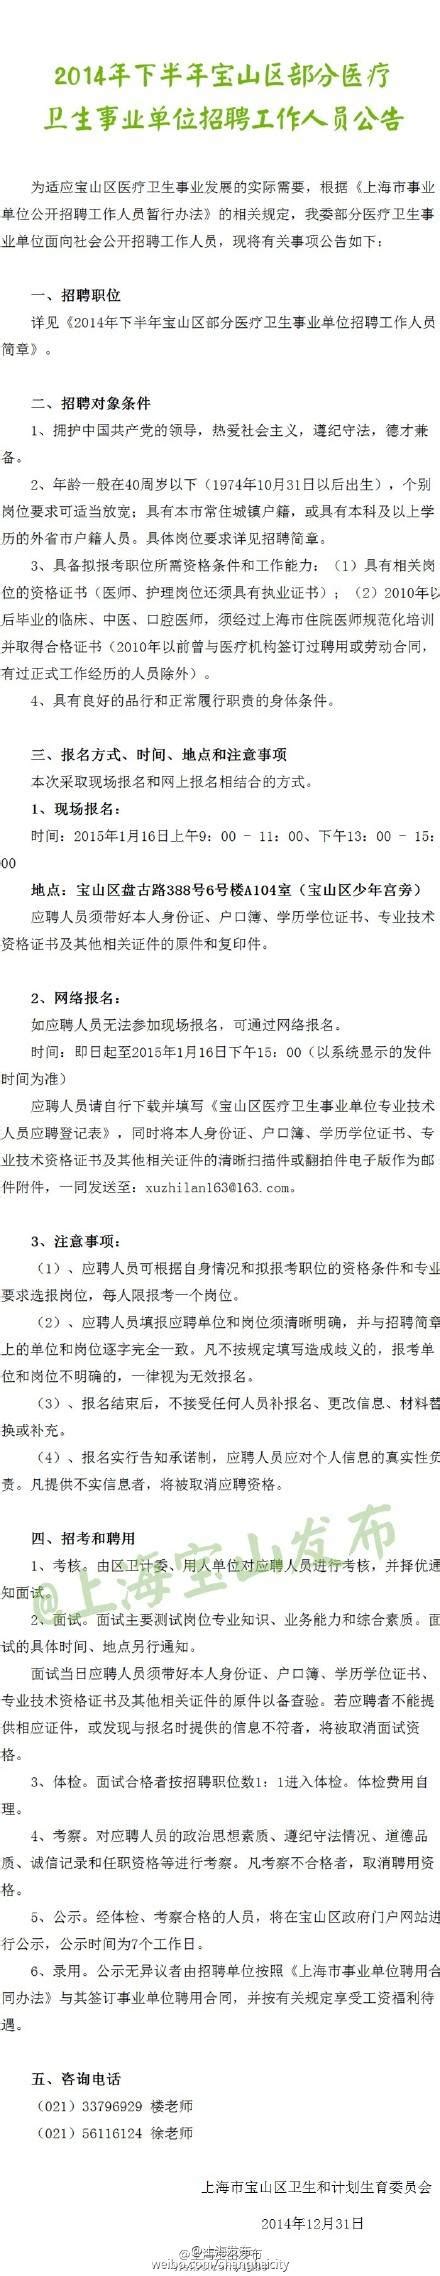 宝山招聘:25家医疗卫生事业单位招170人- 上海本地宝